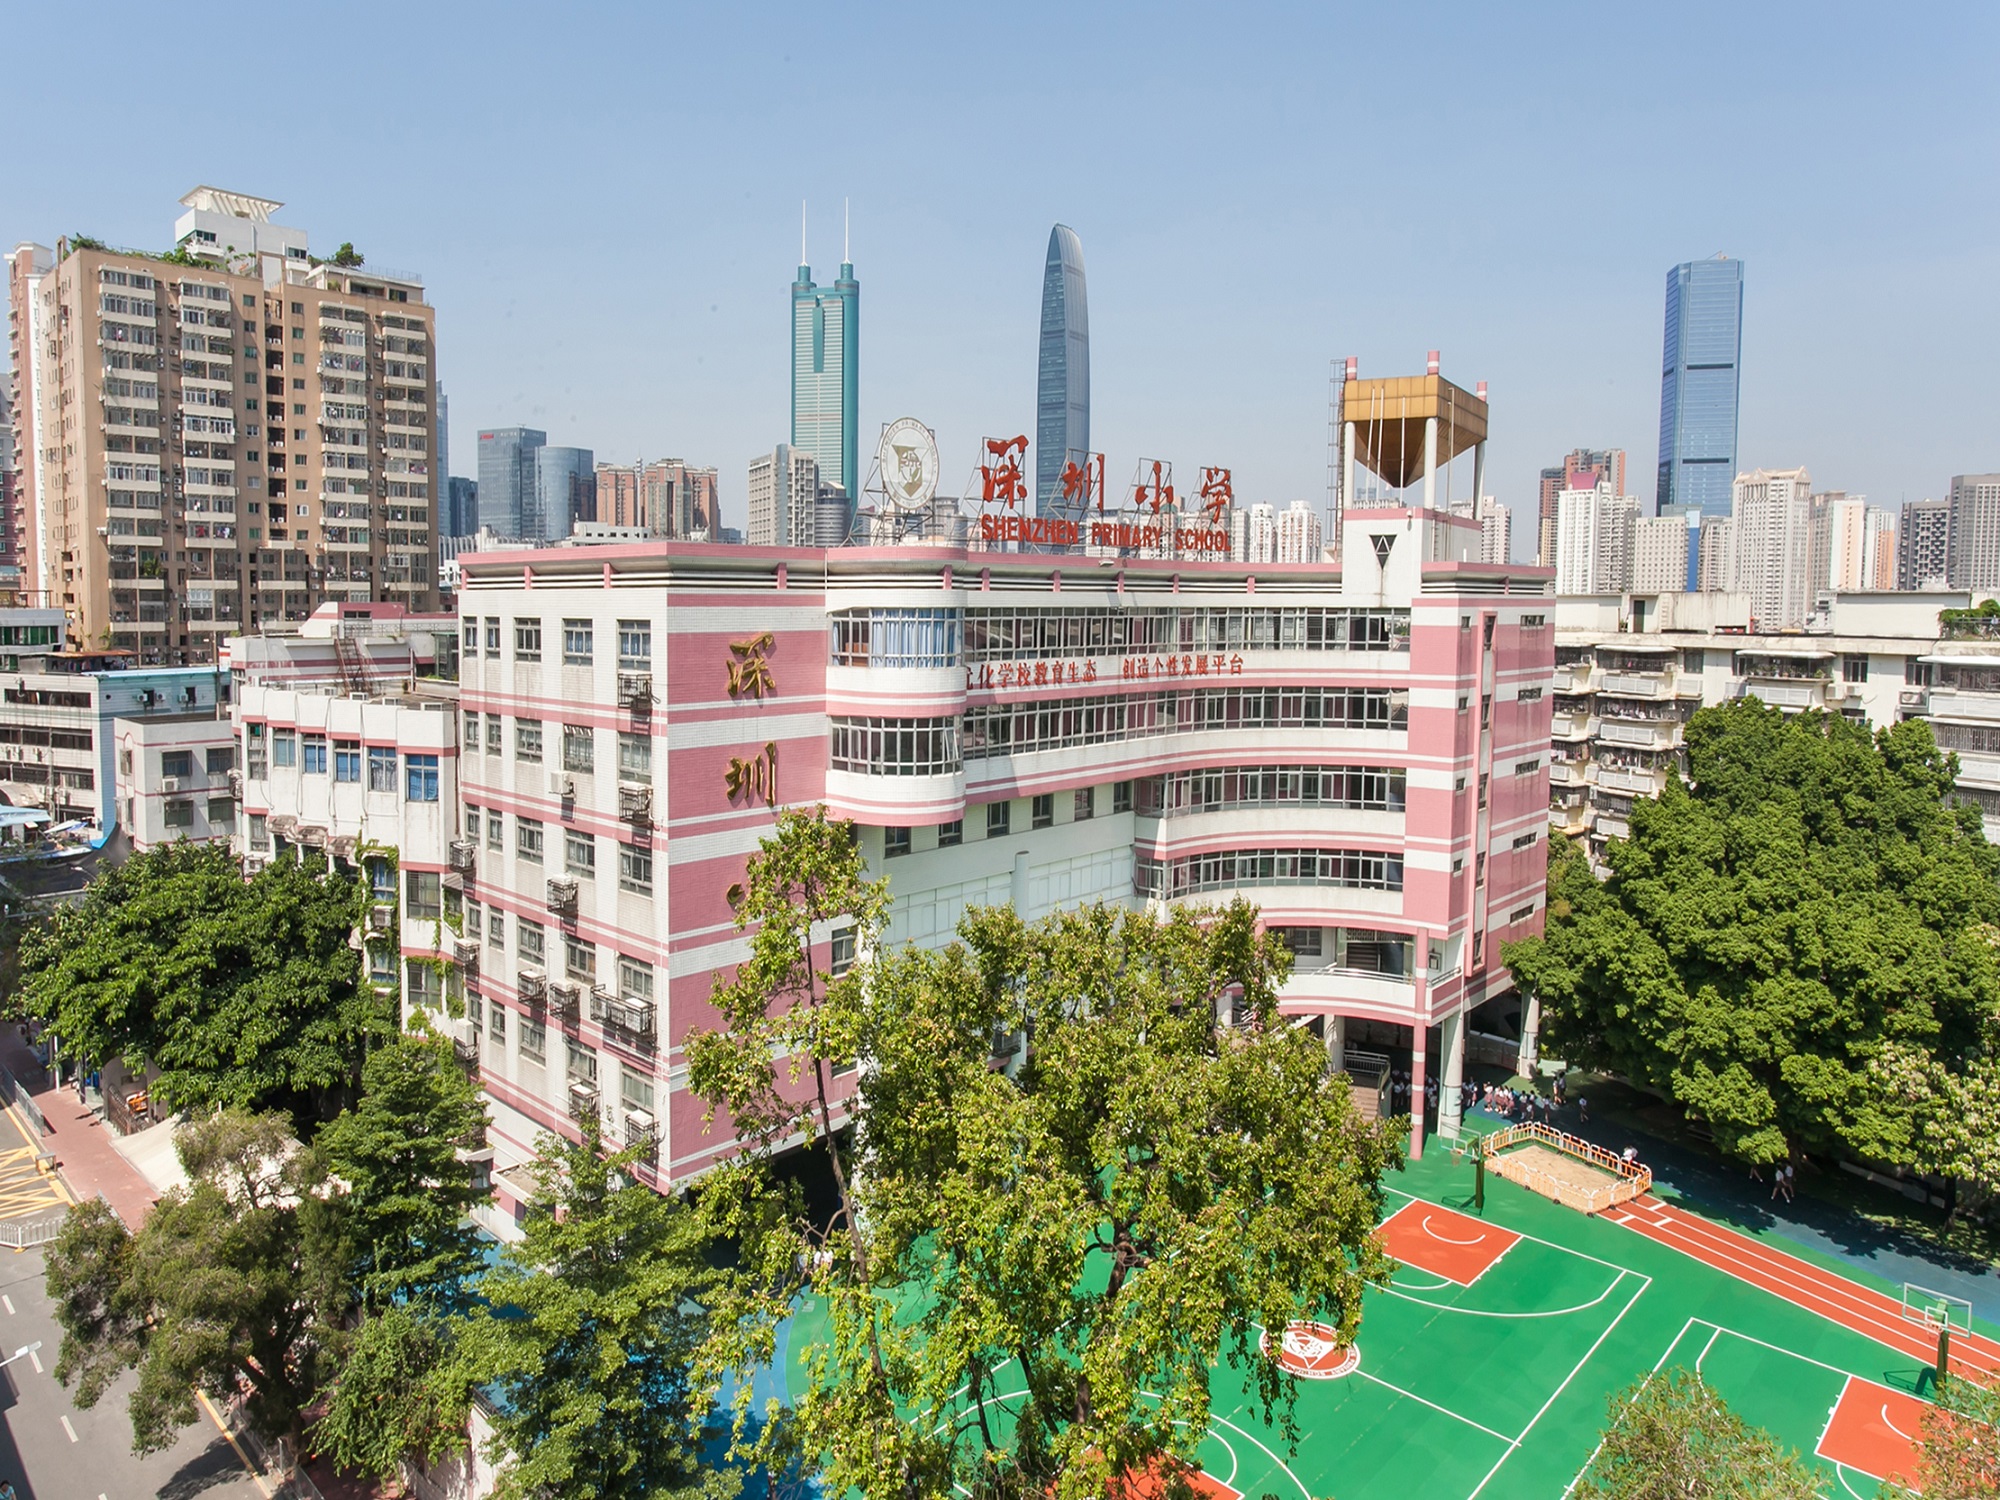 深圳小学,以深圳两字命名,是一所市属重点小学,在四大名校之一的